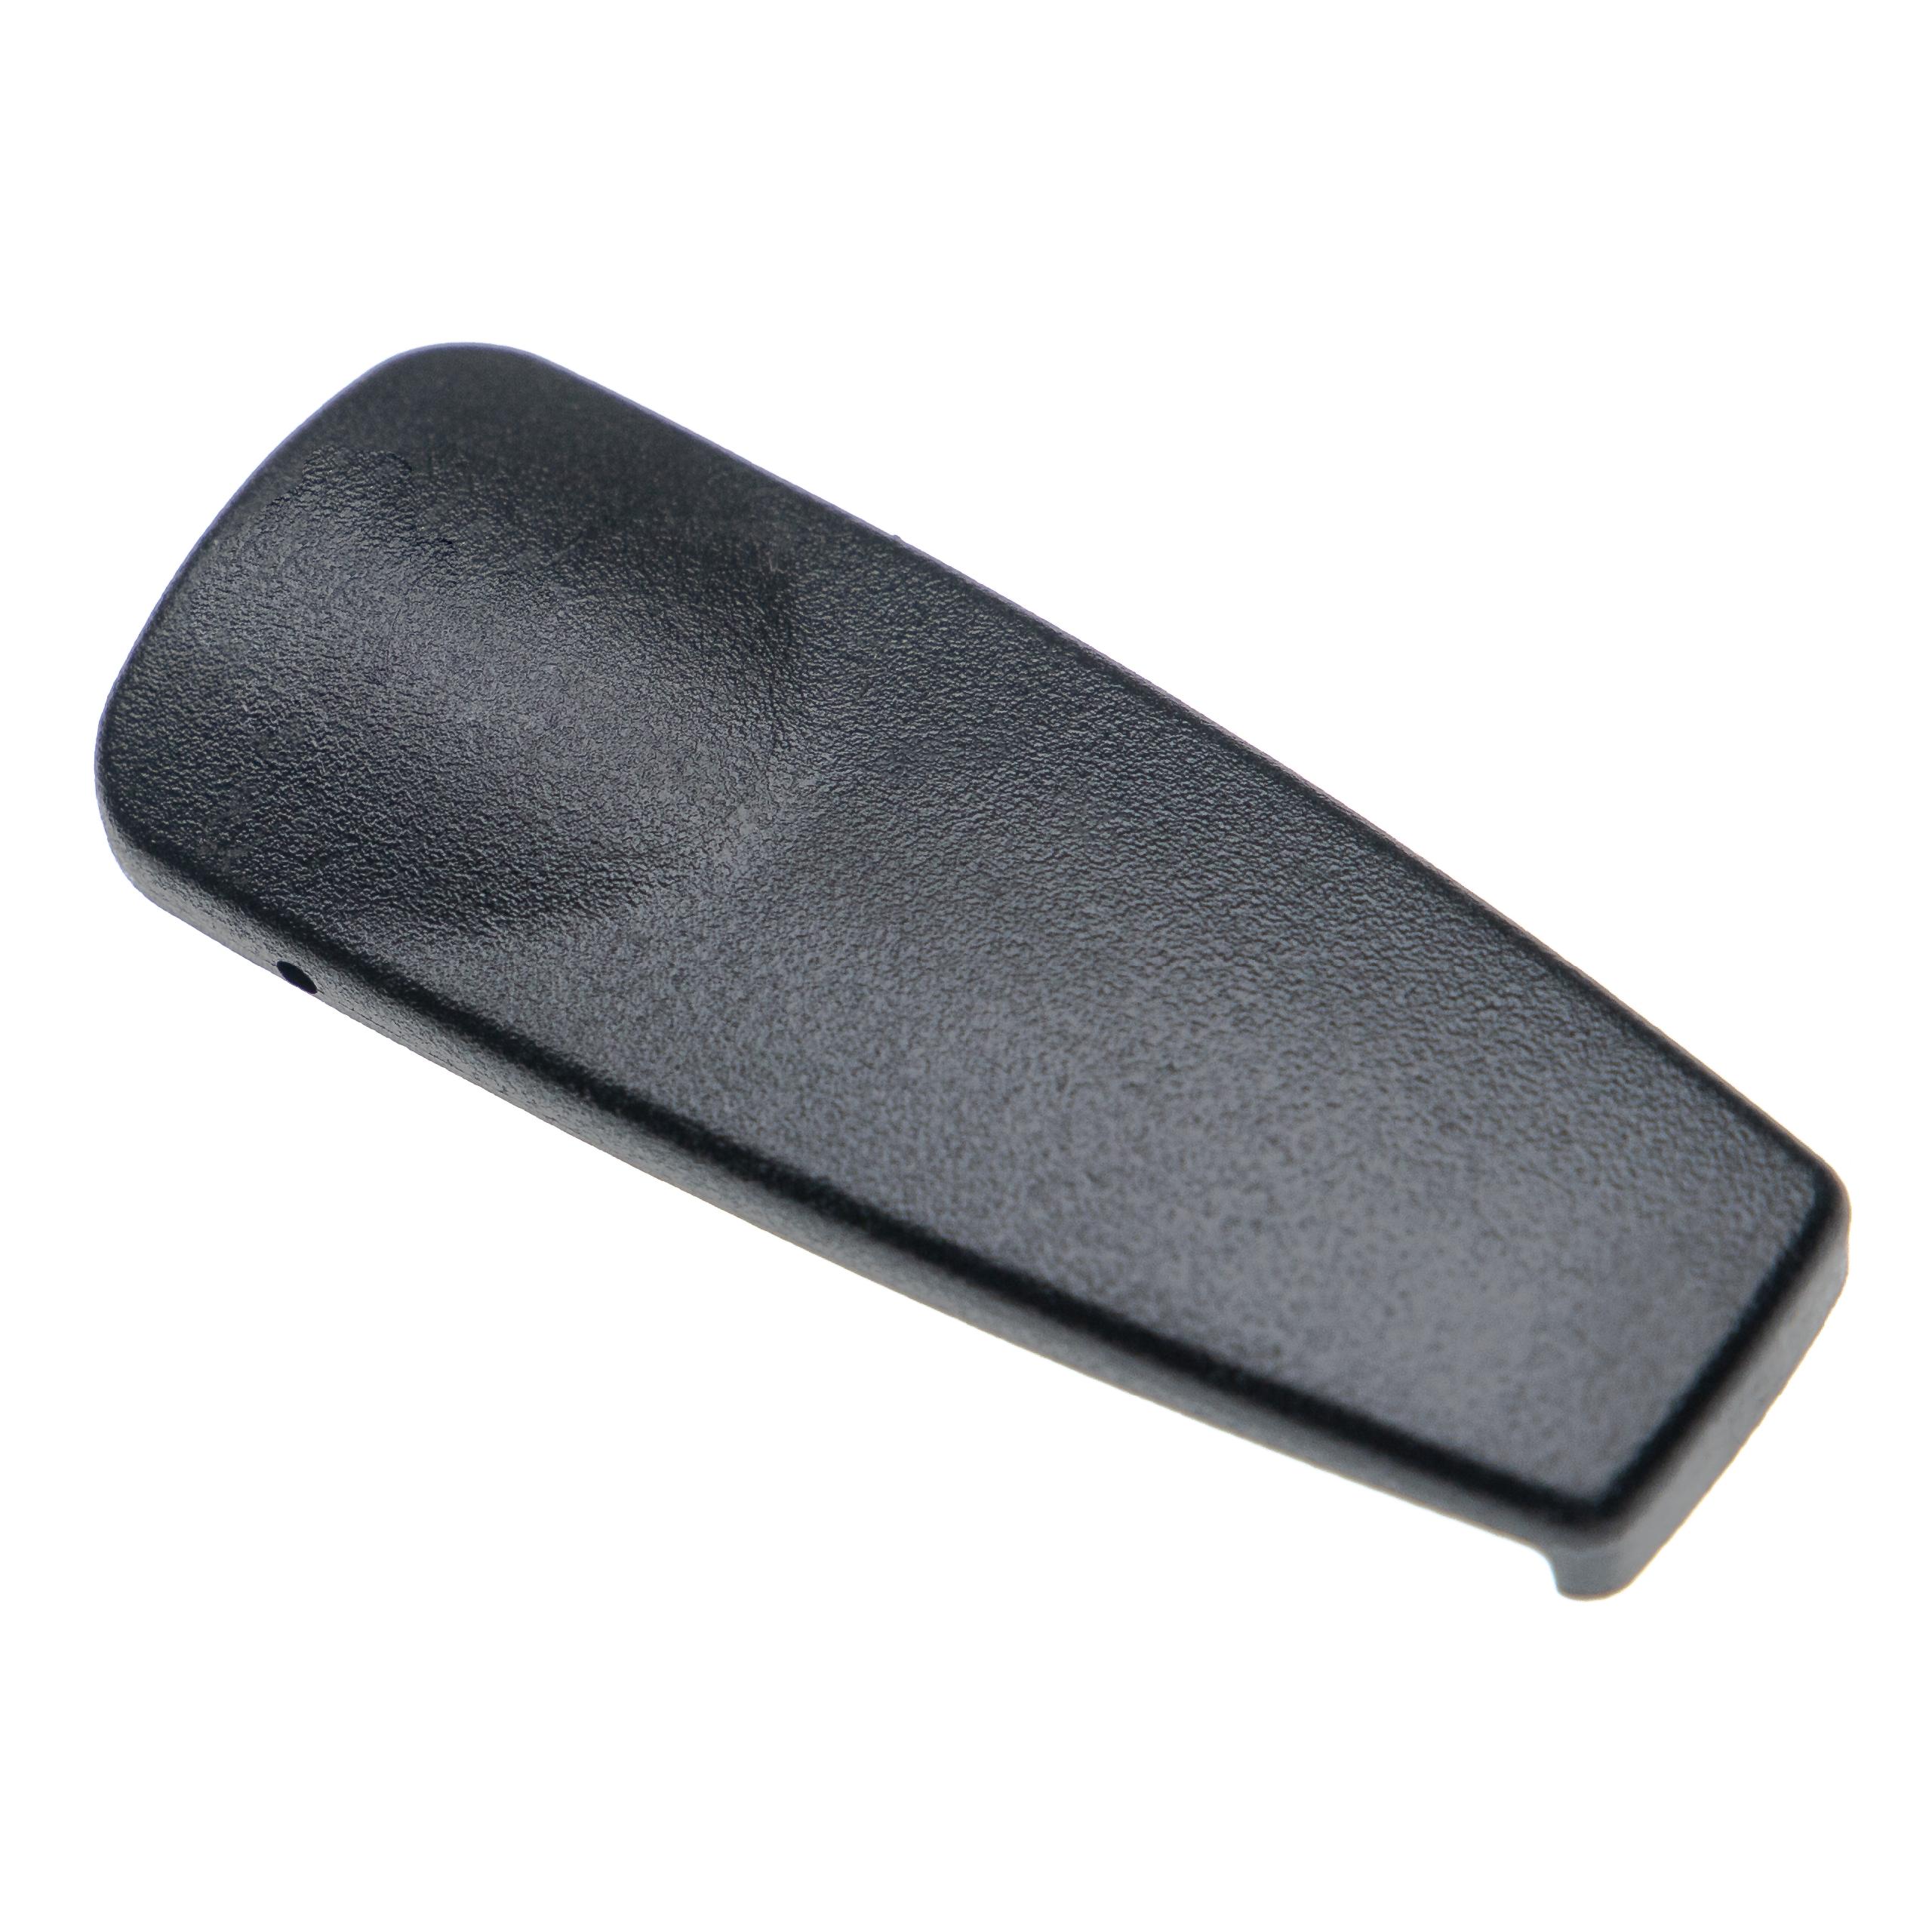 Gürtelclip für GP330 Motorola Funkgerät - Kunststoff, Schwarz